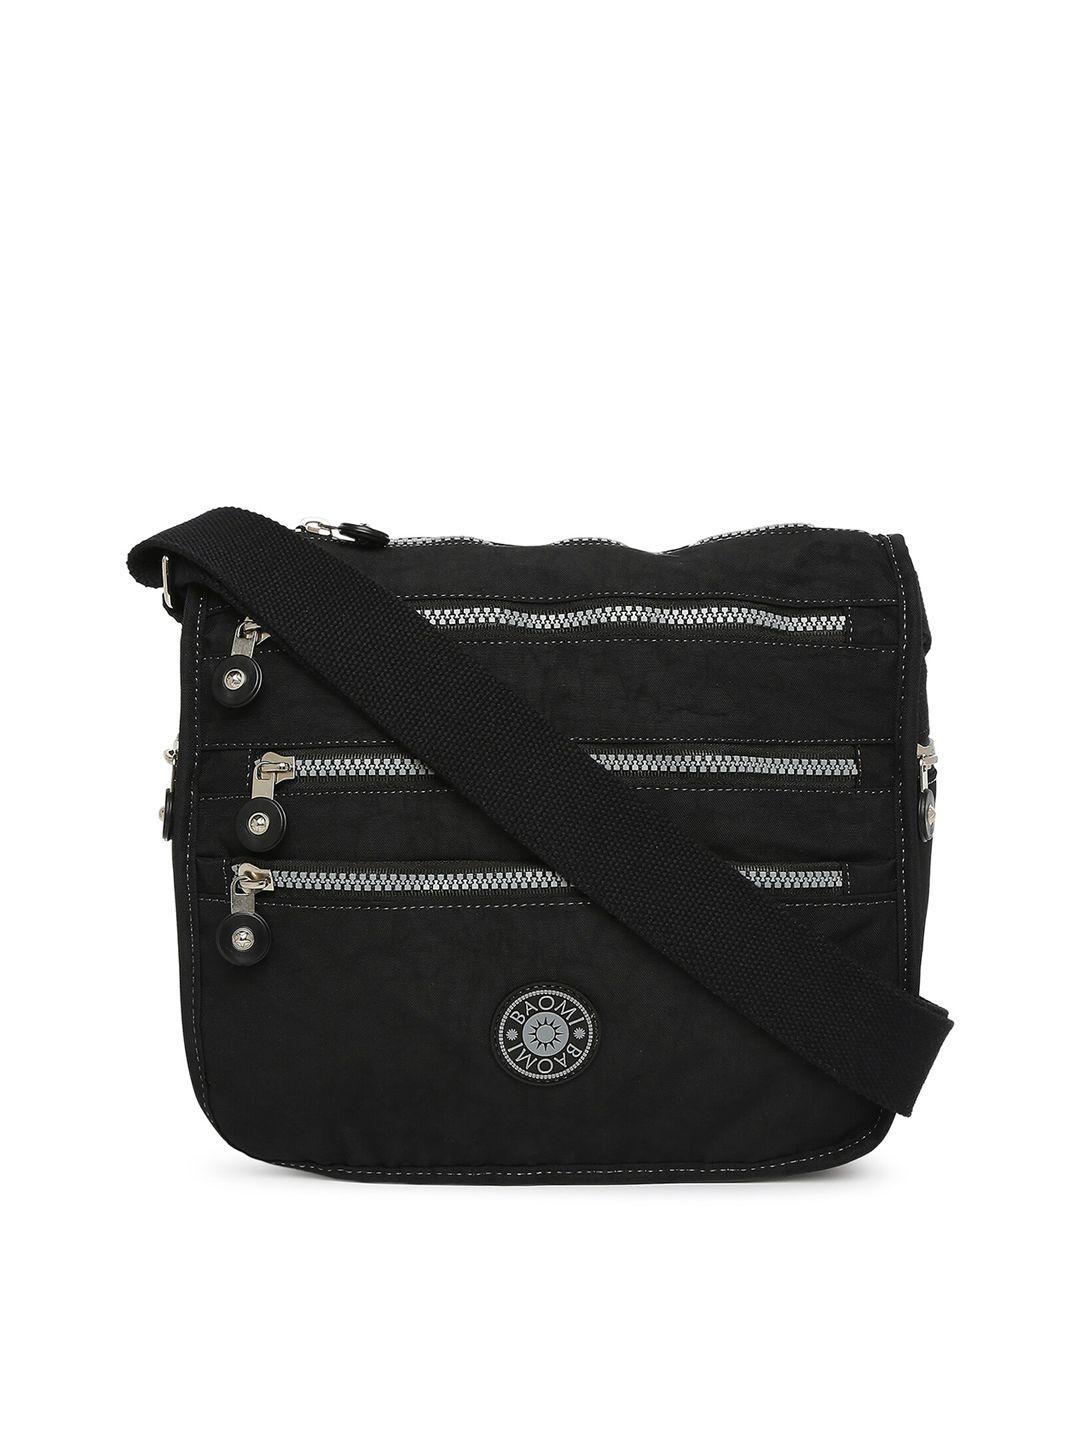 baomi black structured sling bag